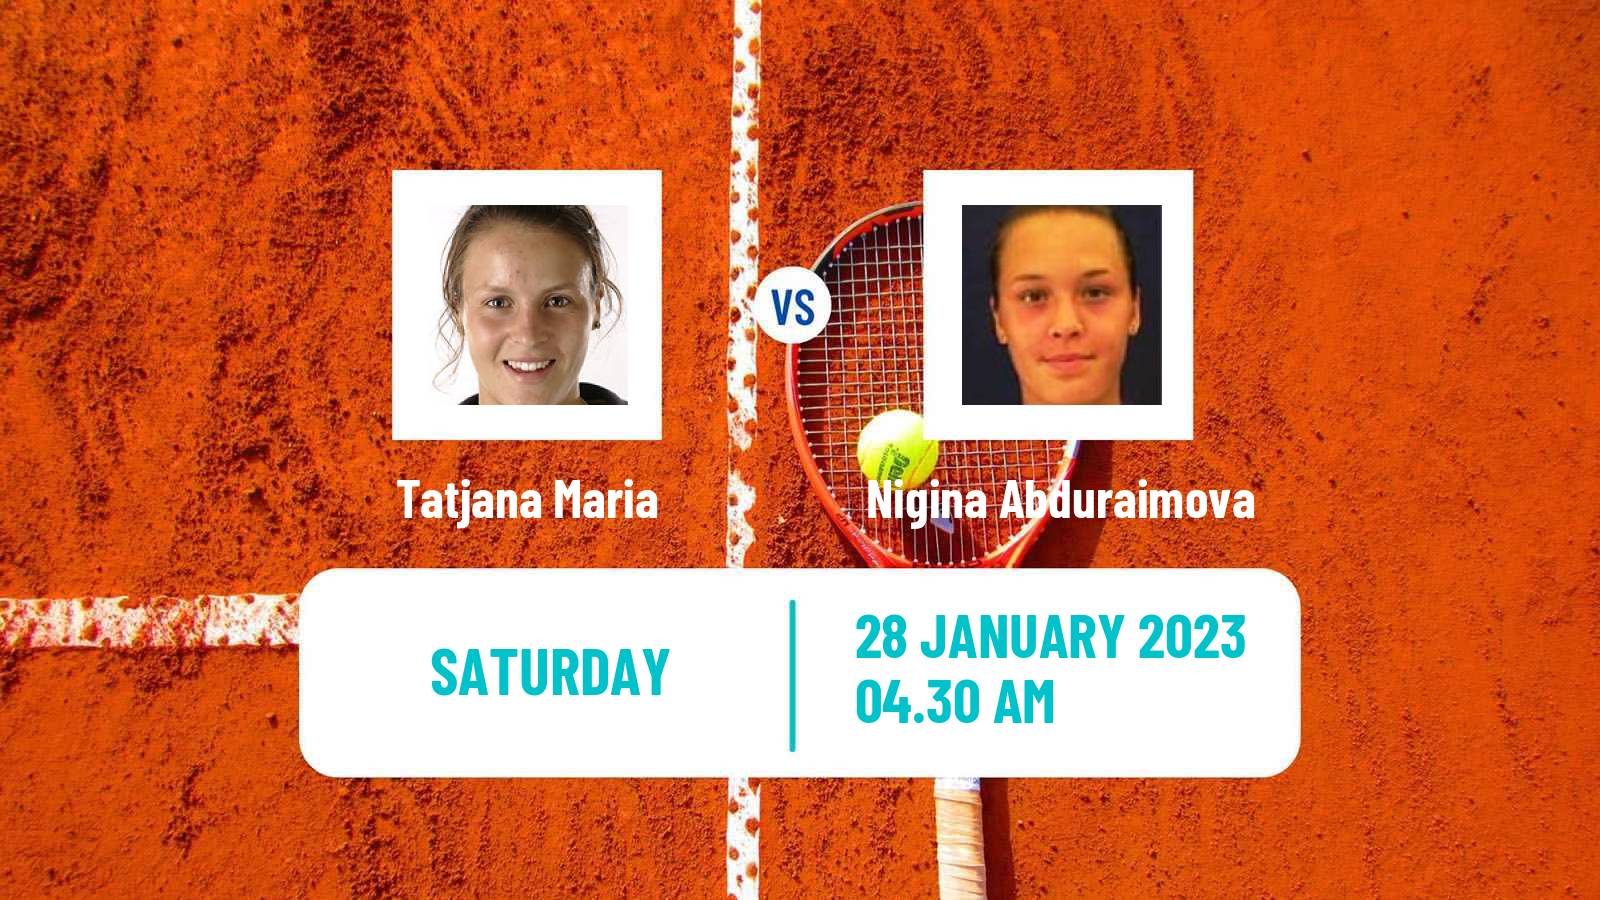 Tennis ITF Tournaments Tatjana Maria - Nigina Abduraimova